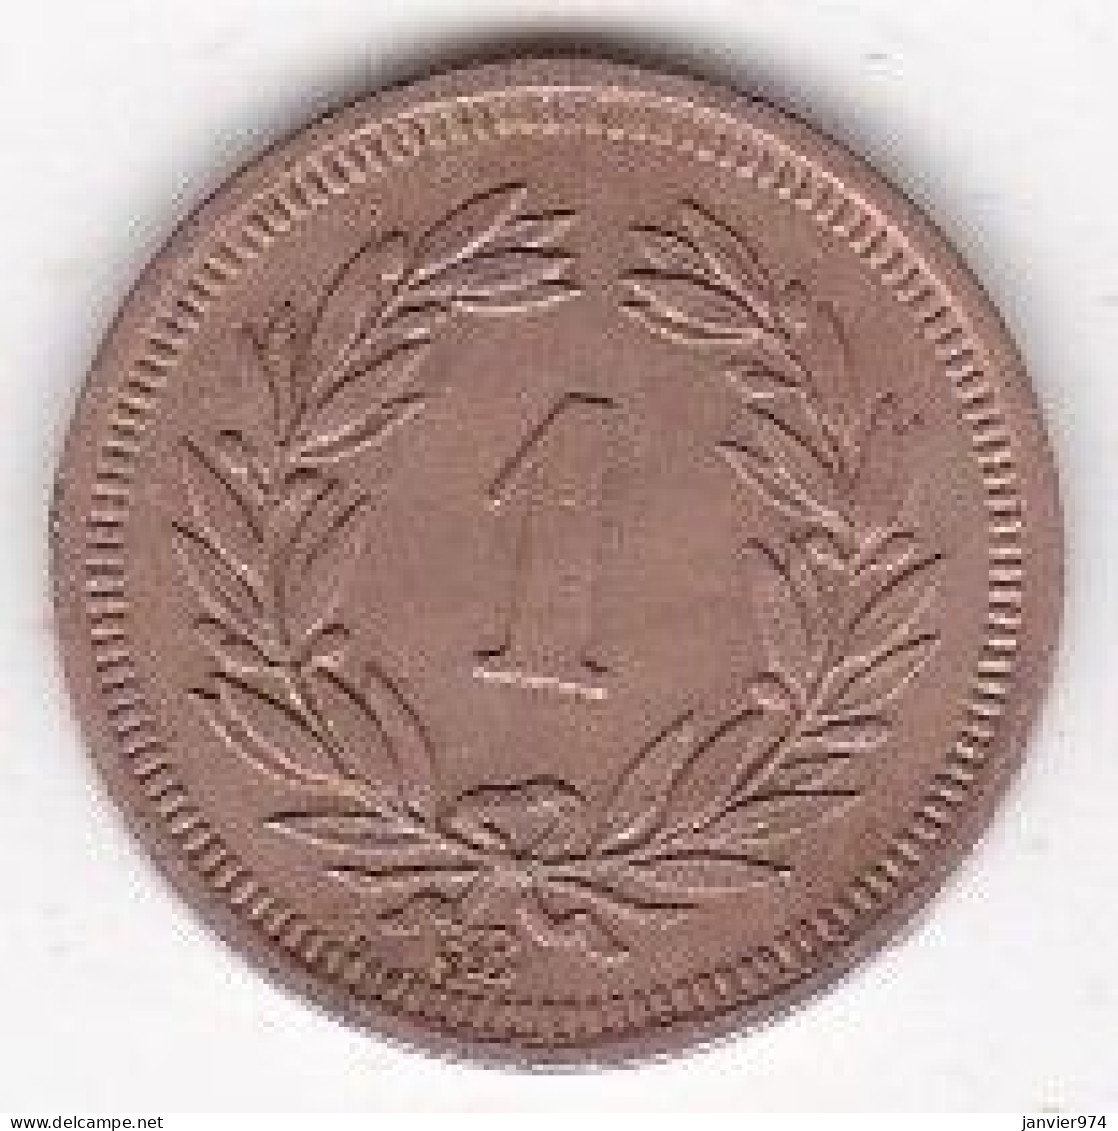 Suisse 1 Rappen 1937  B, En Bronze , KM# 3 - 1 Rappen